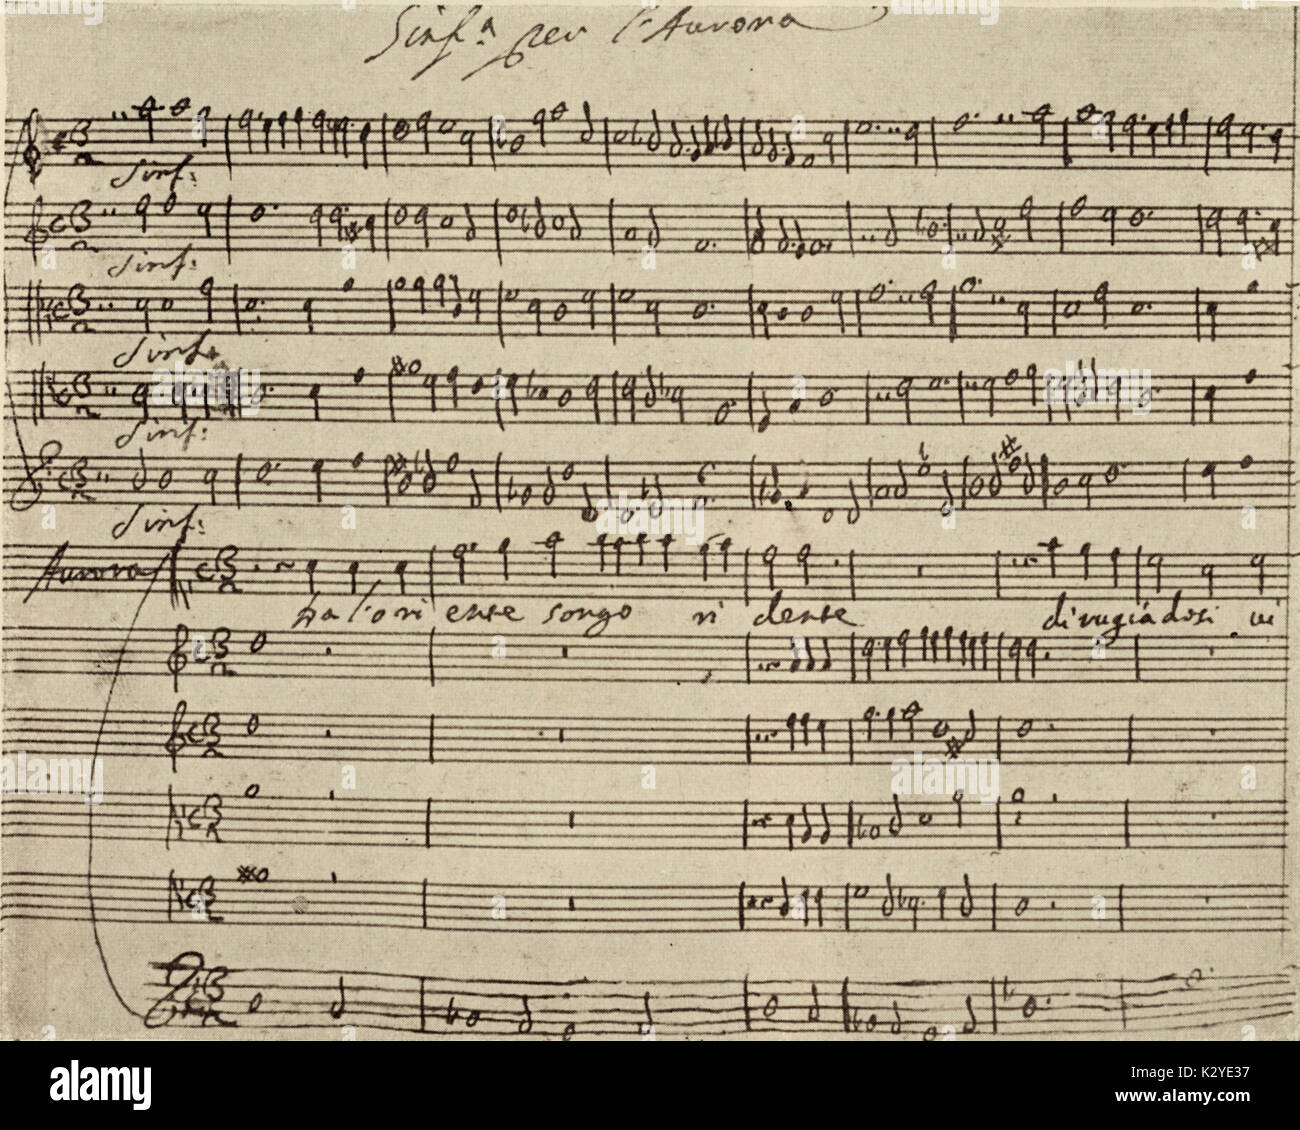 CAVALLI, Francesco - Handwritten score for prologue of his opera, L'Egisto, 1642. (favola drammatica) Venetian Composer and Organist, 1602-1676. Successor to Monteverdi.  Libretto by Giovanni Faustini. Stock Photo